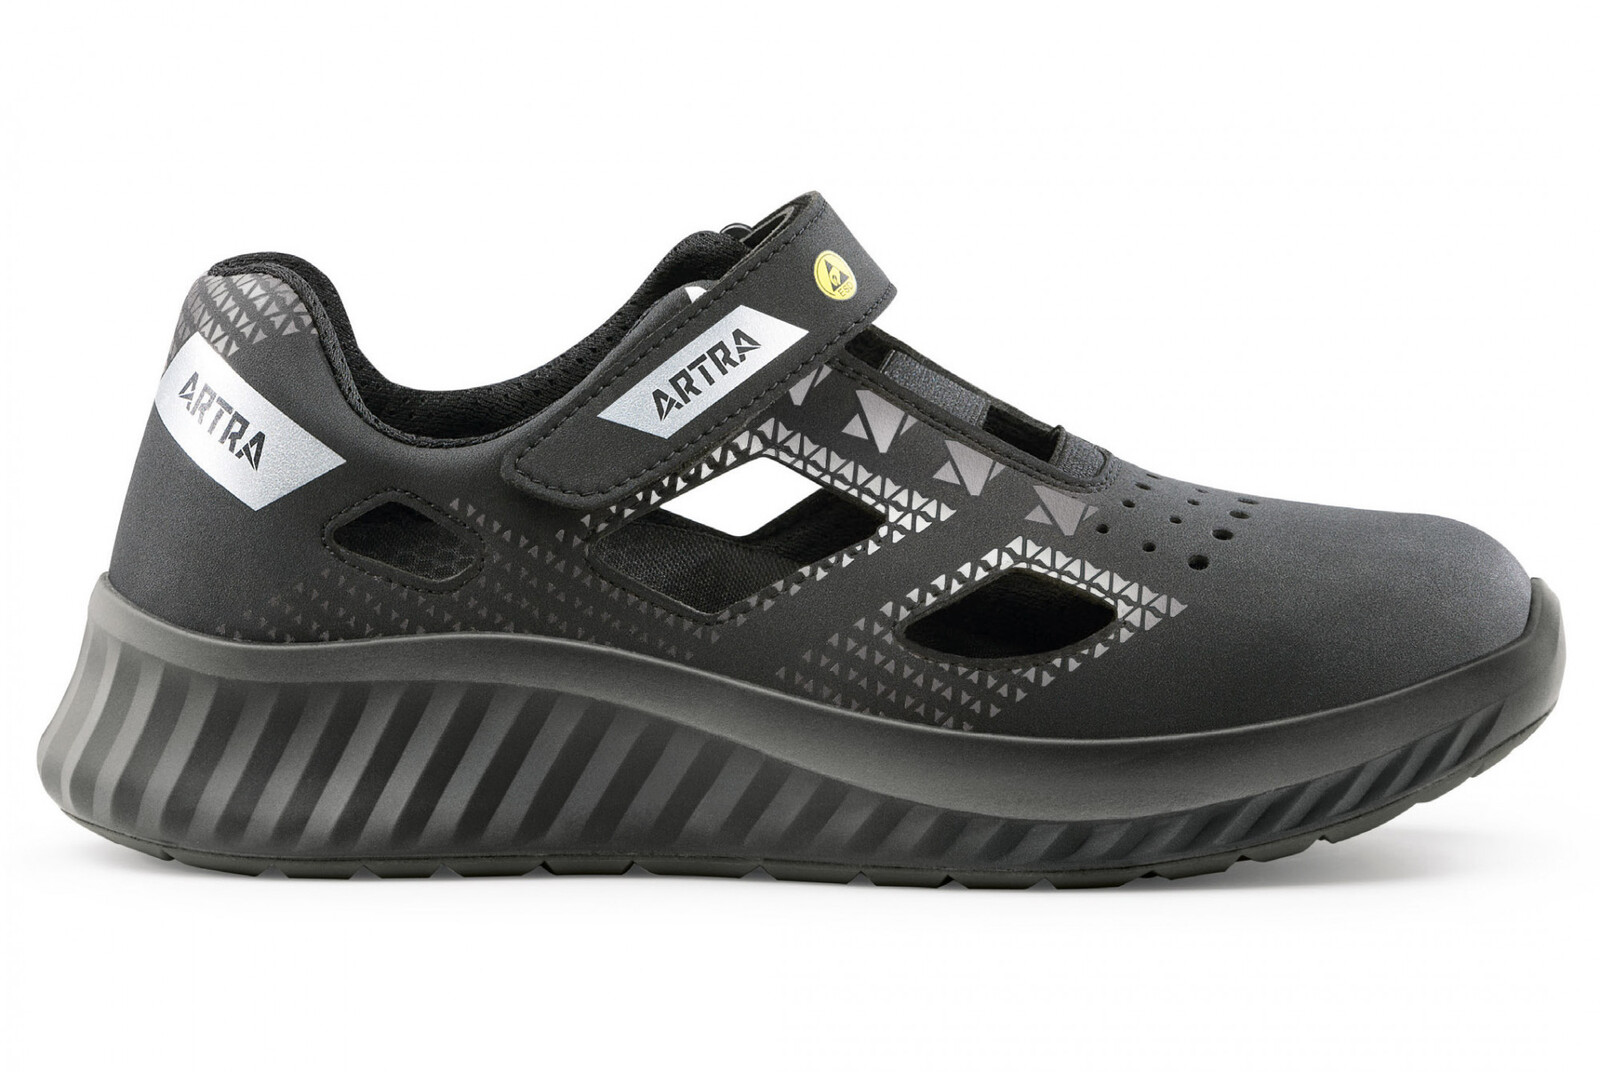 Bezpečnostné sandále Artra Arso 701 616560 S1 SRC ESD - veľkosť: 40, farba: čierna/sivá